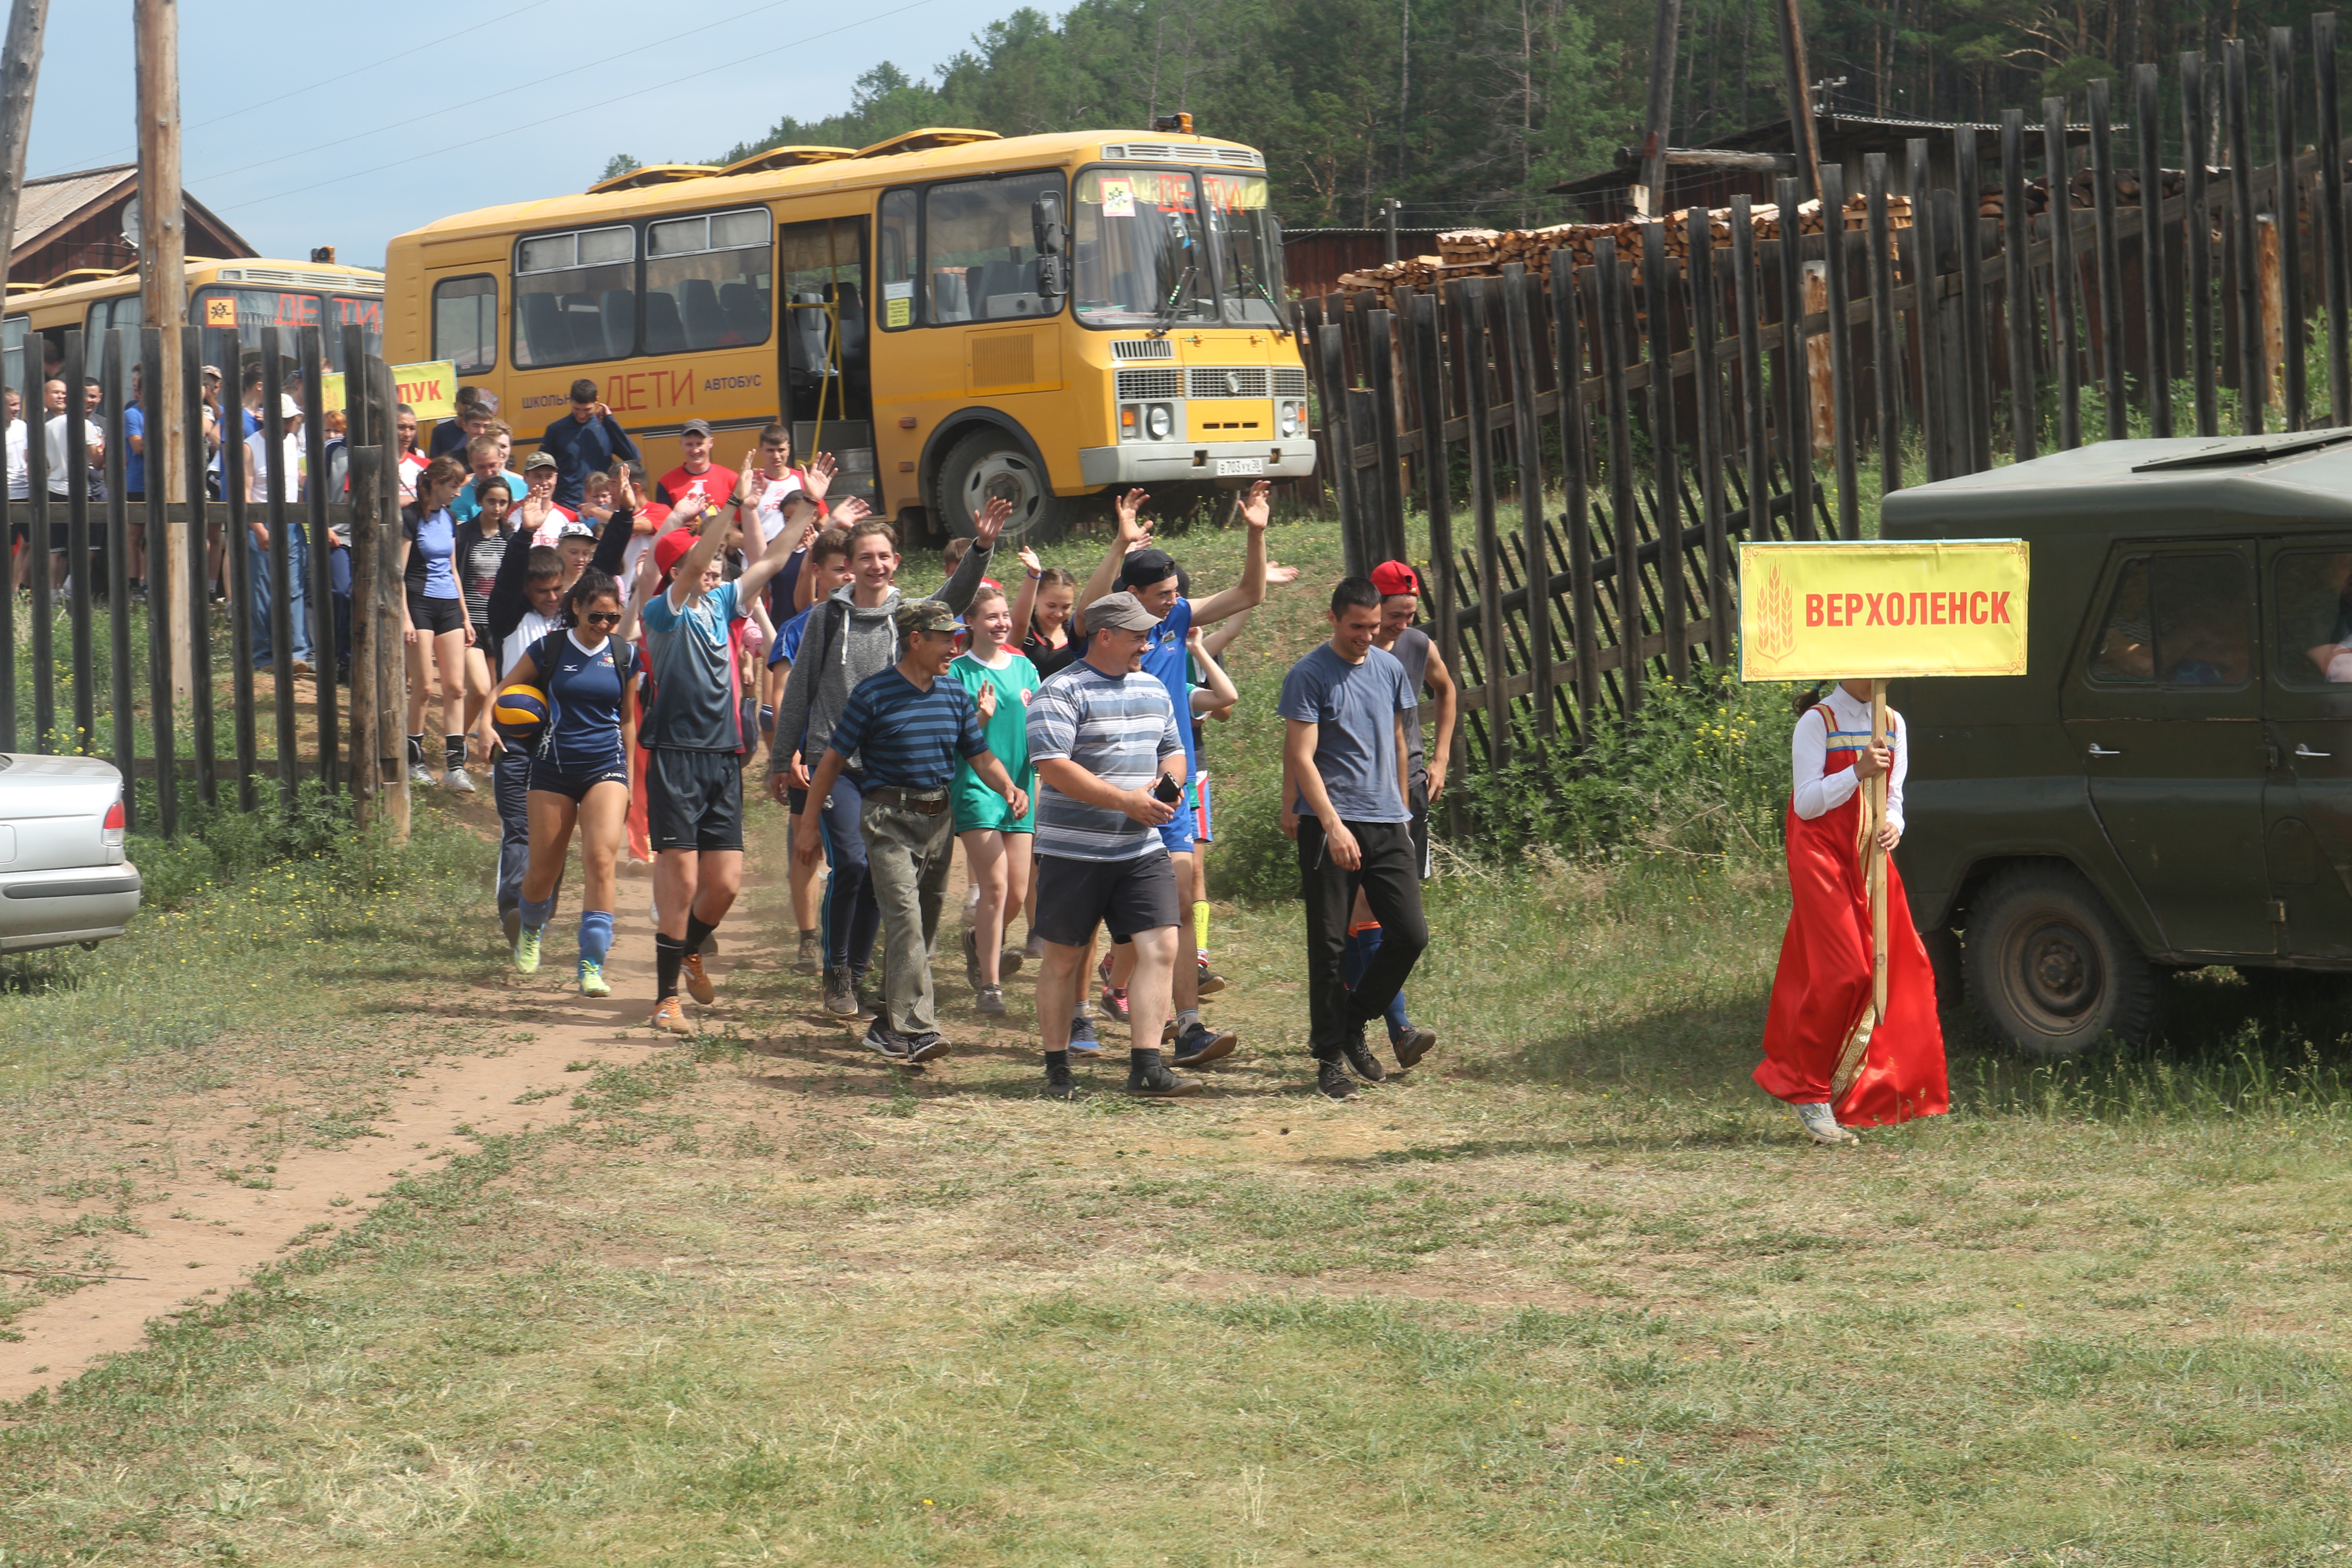 23 июня 2019 года на центральном стадионе села Верхоленск прошли III районные летние сельские спортивные игры